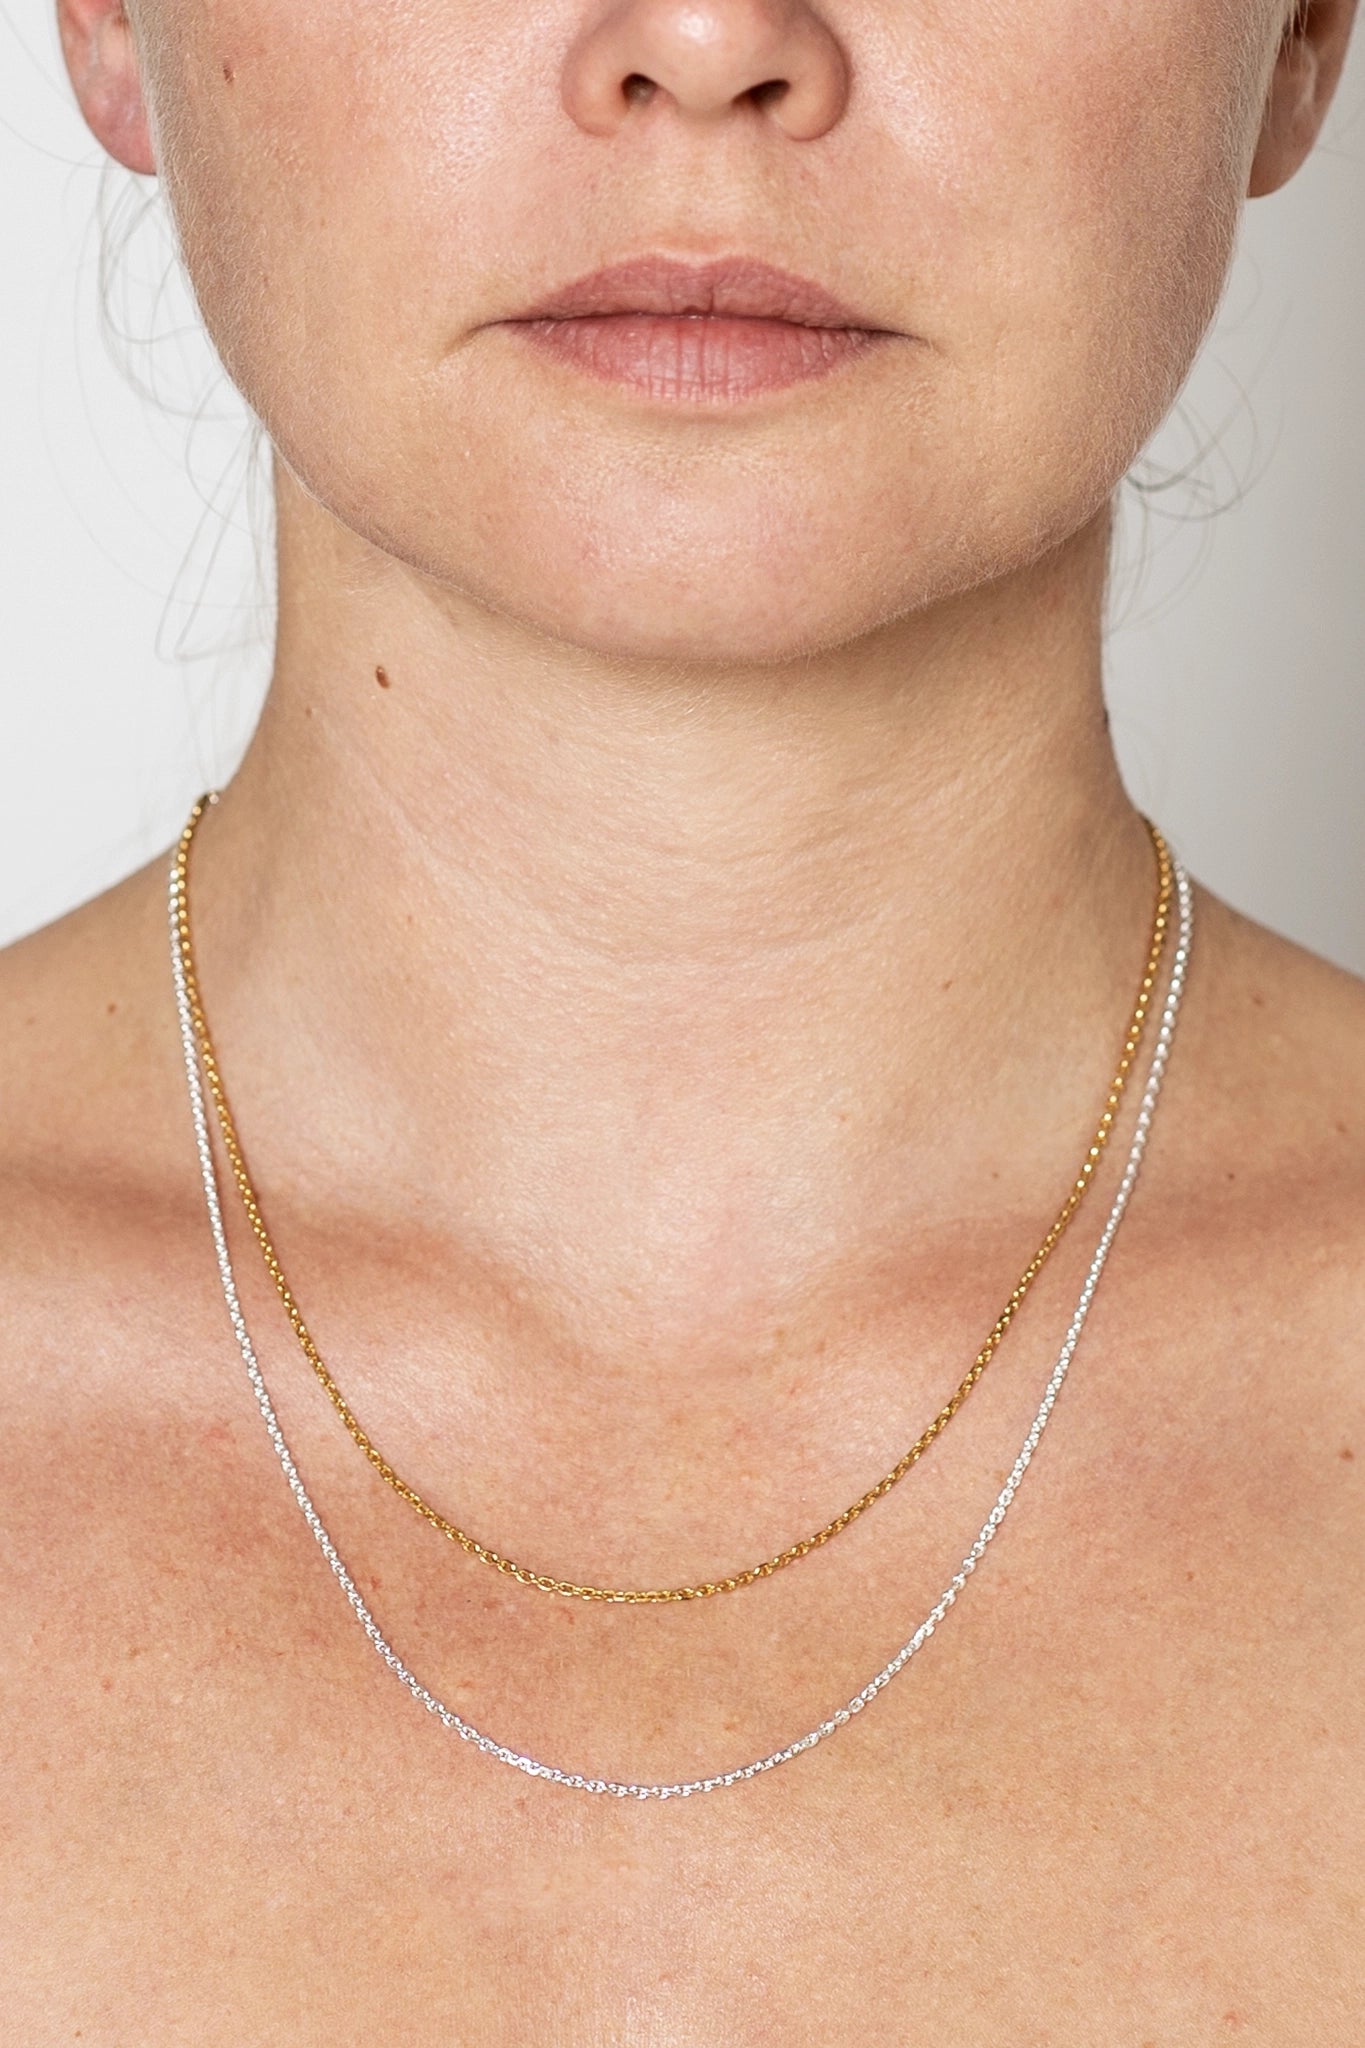 Tragefoto mit zwei unterschiedlich langen Ketten in silber und gold